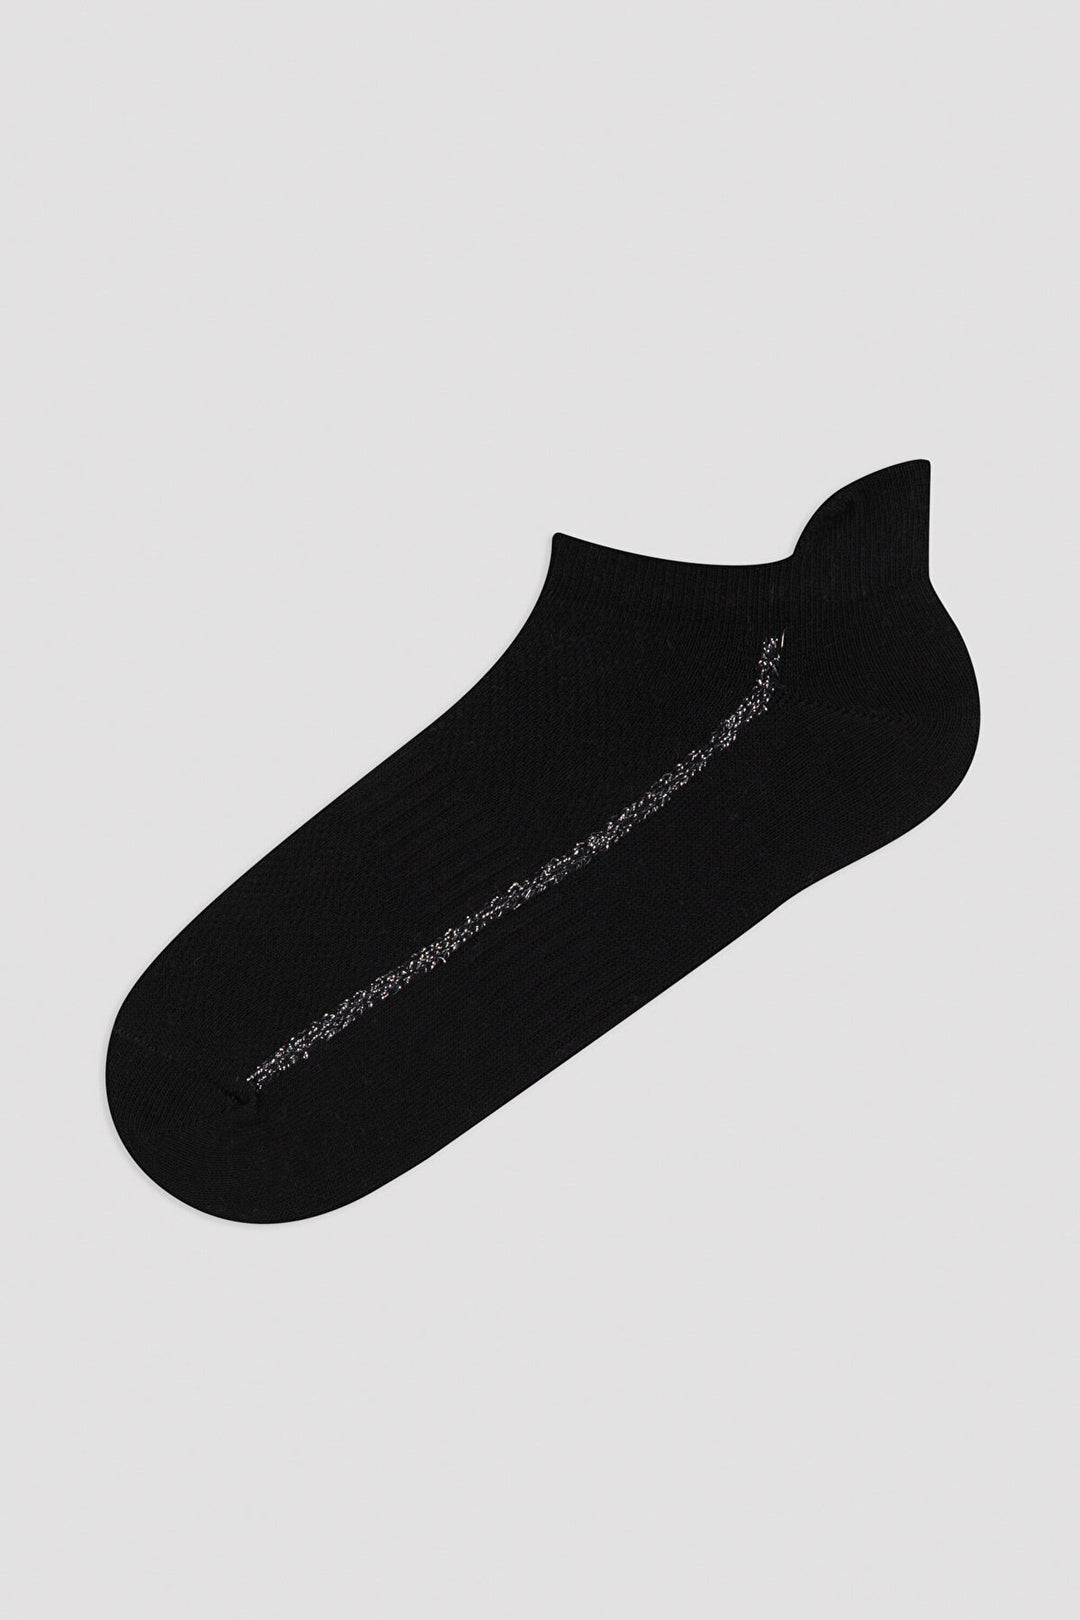 Black - Grey - White Line 3In1 Liner Socks